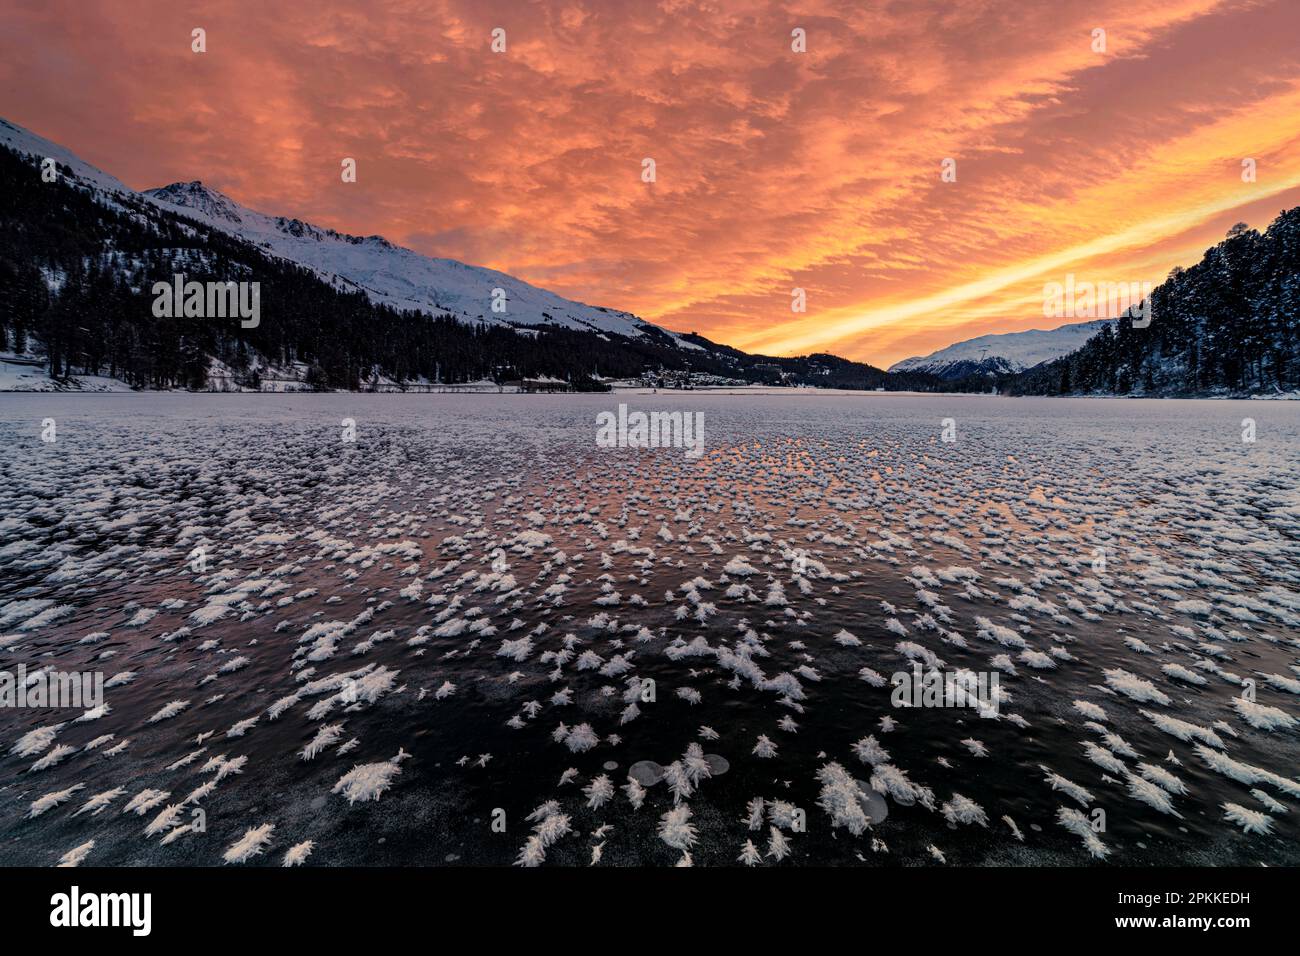 Cielo acceso all'alba sul lago ghiacciato Champfer coperto di fiori di ghiaccio in inverno, Engadina, Cantone di Graubunden, Svizzera, Europa Foto Stock